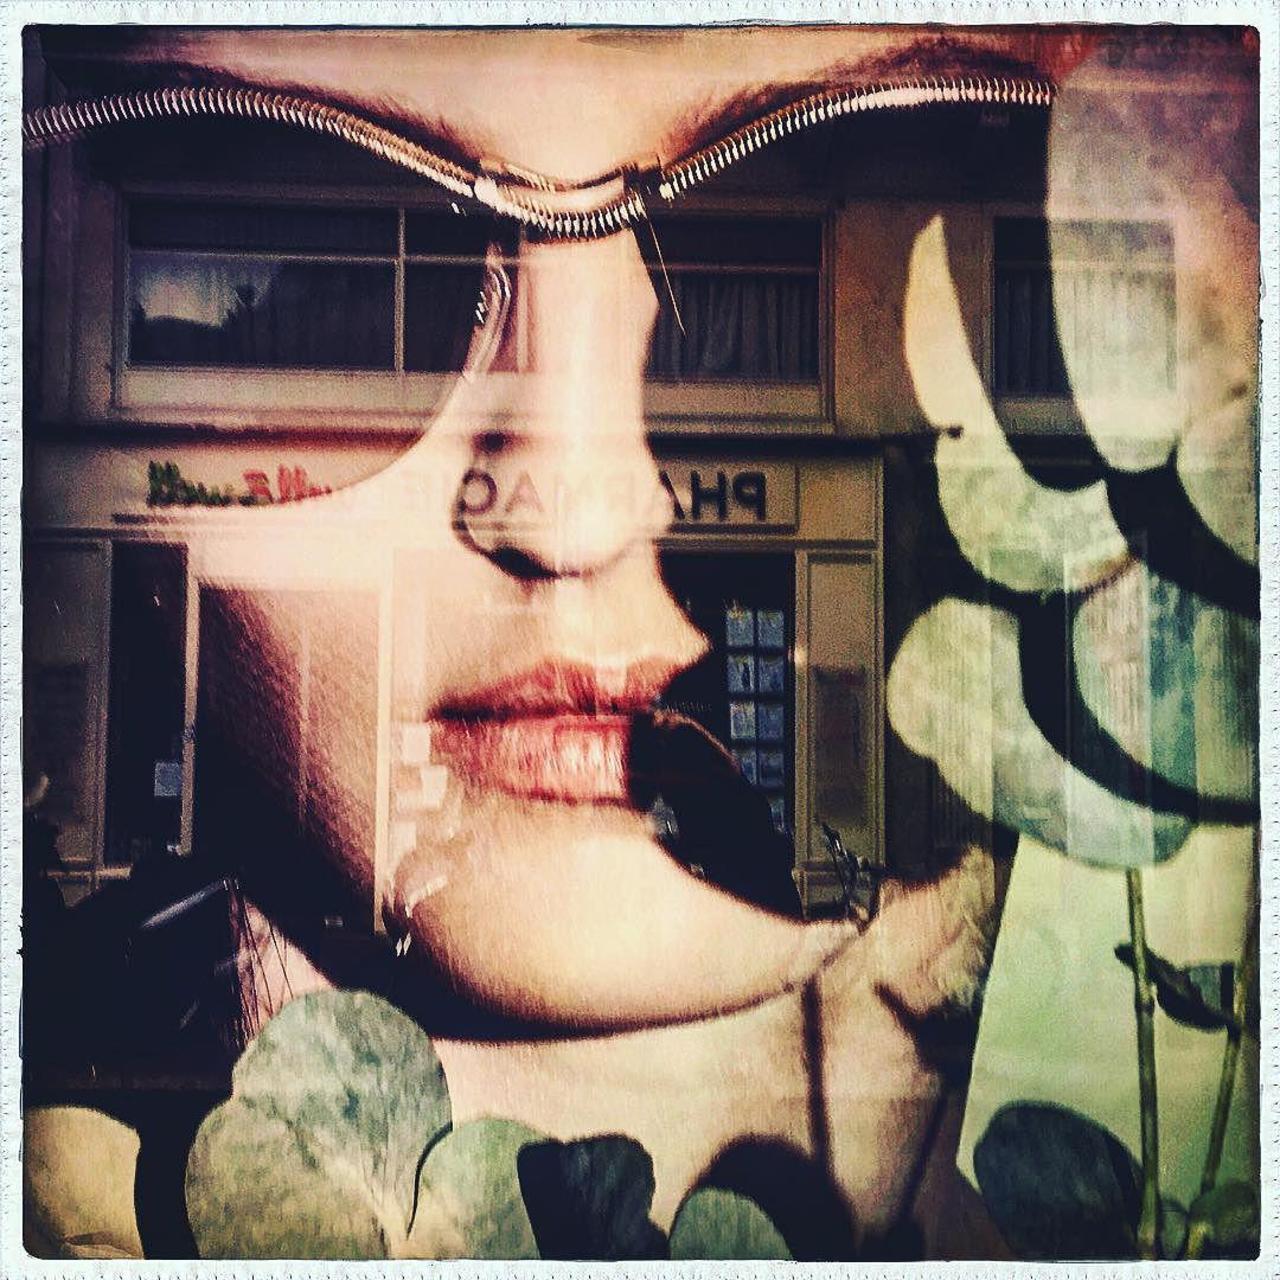 #Paris #graffiti photo by @laurent__payet http://ift.tt/1XcPnq4 #StreetArt http://t.co/TPSD6bXiS7